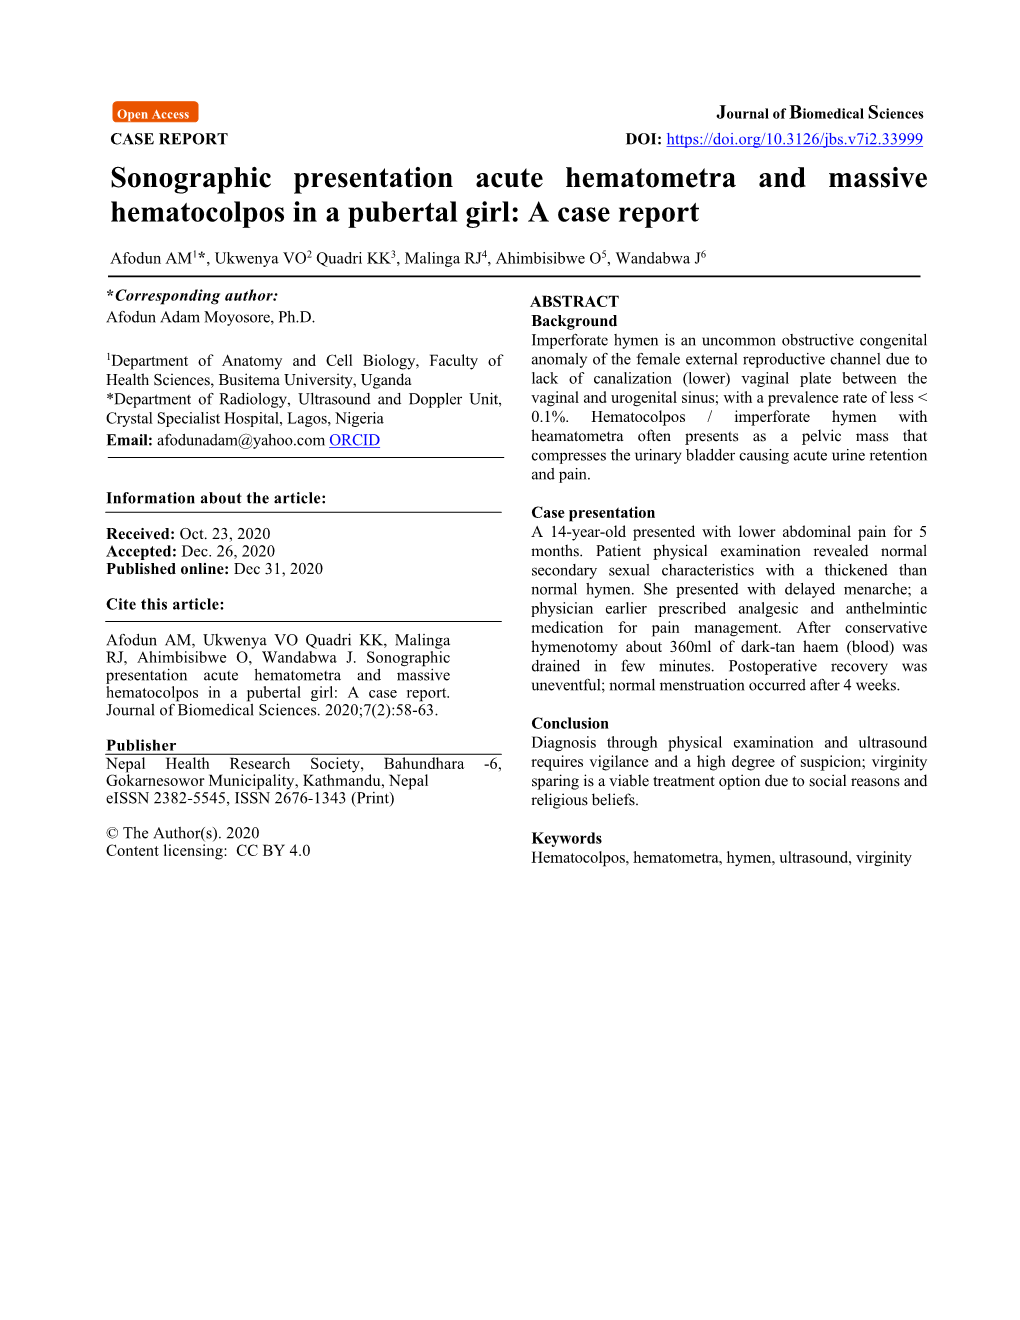 Sonographic Presentation Acute Hematometra and Massive Hematocolpos in a Pubertal Girl: a Case Report